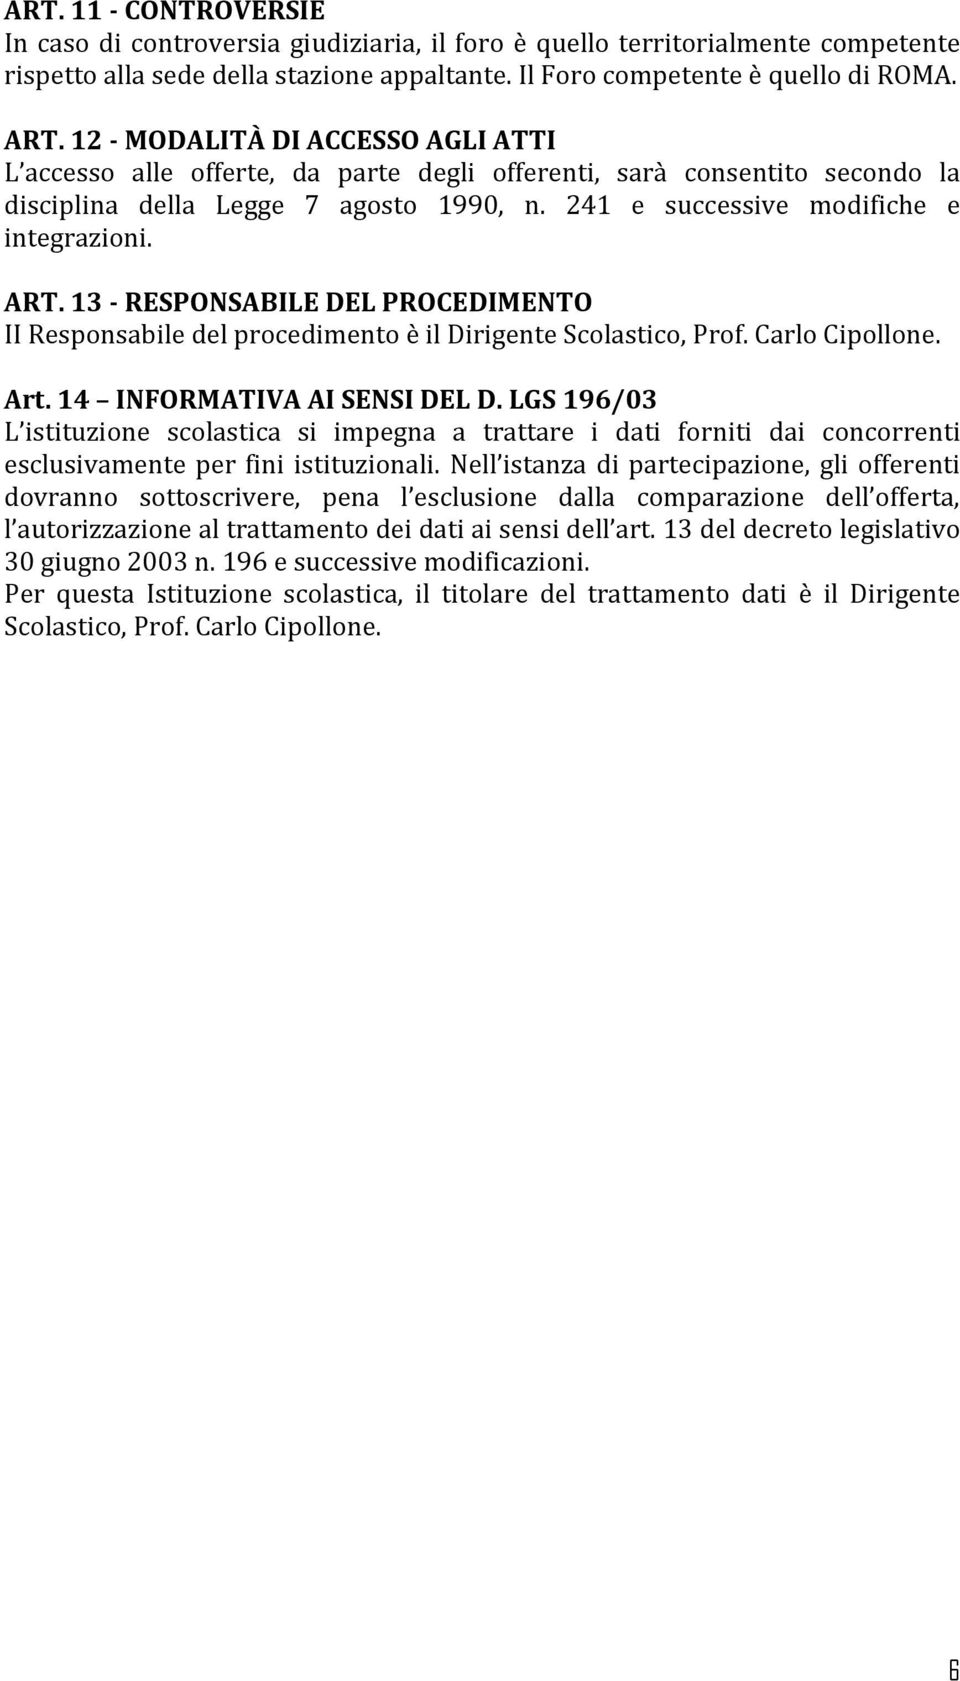 13 - RESPONSABILE DEL PROCEDIMENTO II Responsabile del procedimento è il Dirigente Scolastico, Prof. Carlo Cipollone. Art. 14 INFORMATIVA AI SENSI DEL D.